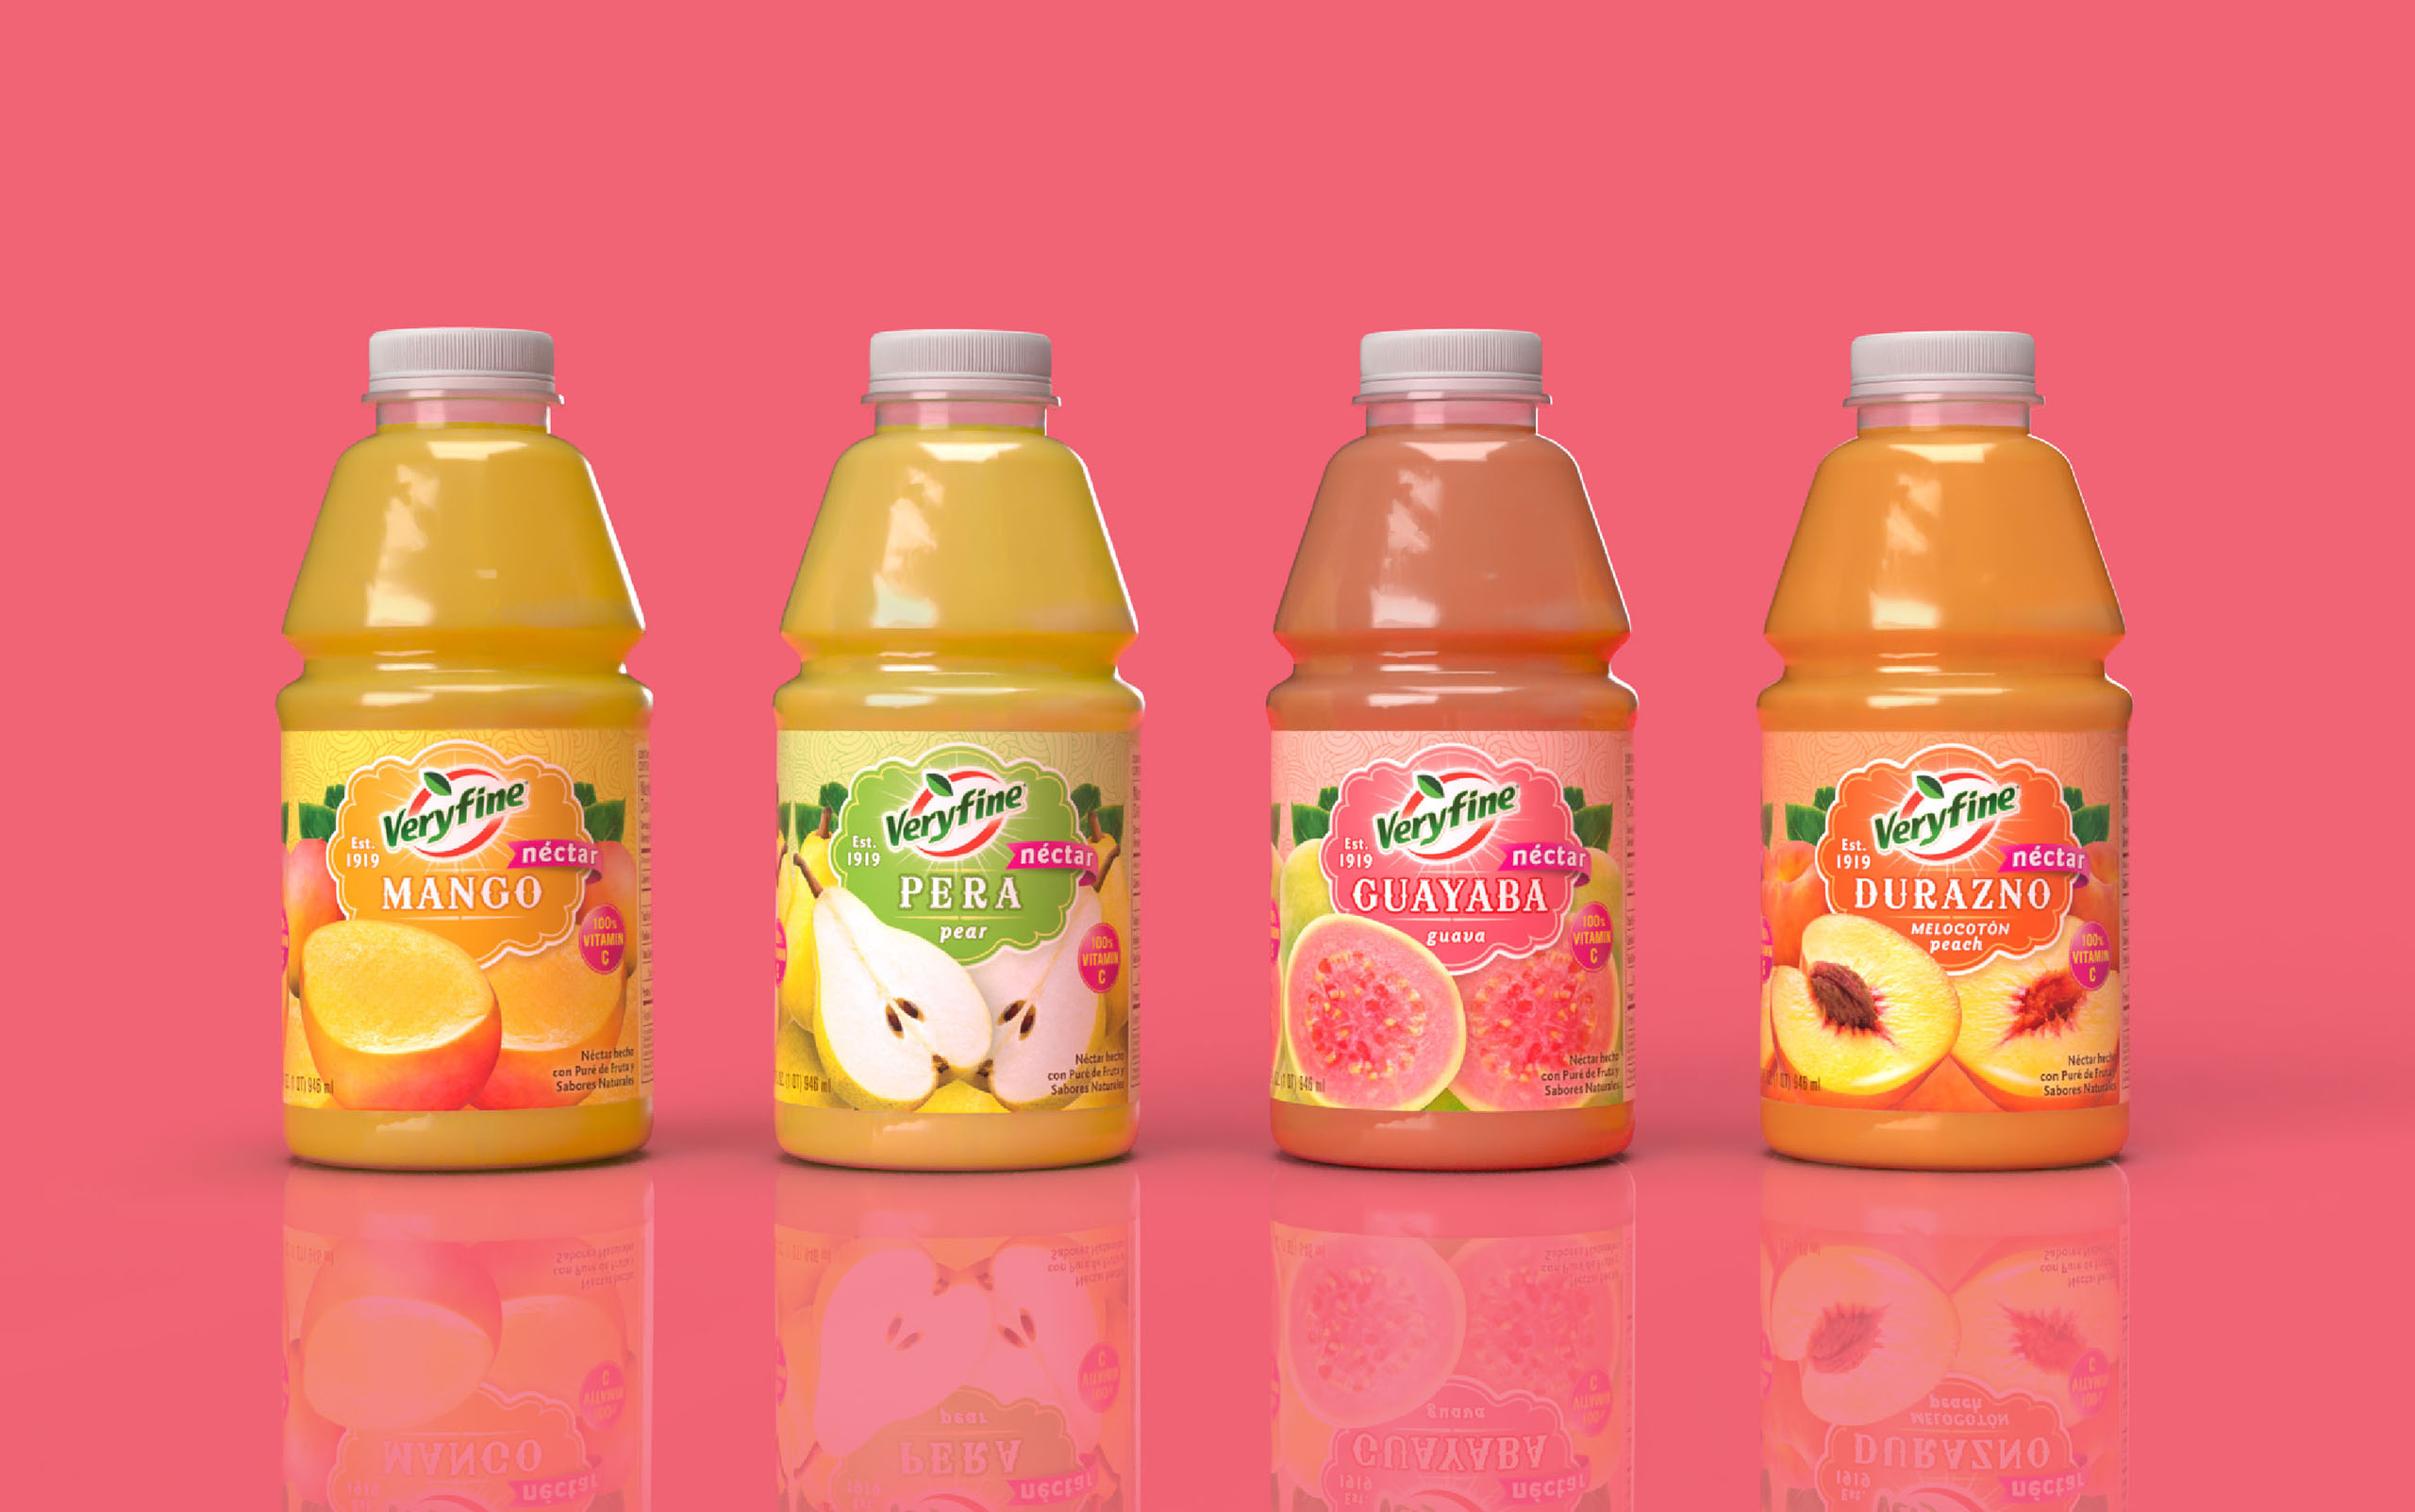 Veryfine juice packaging design